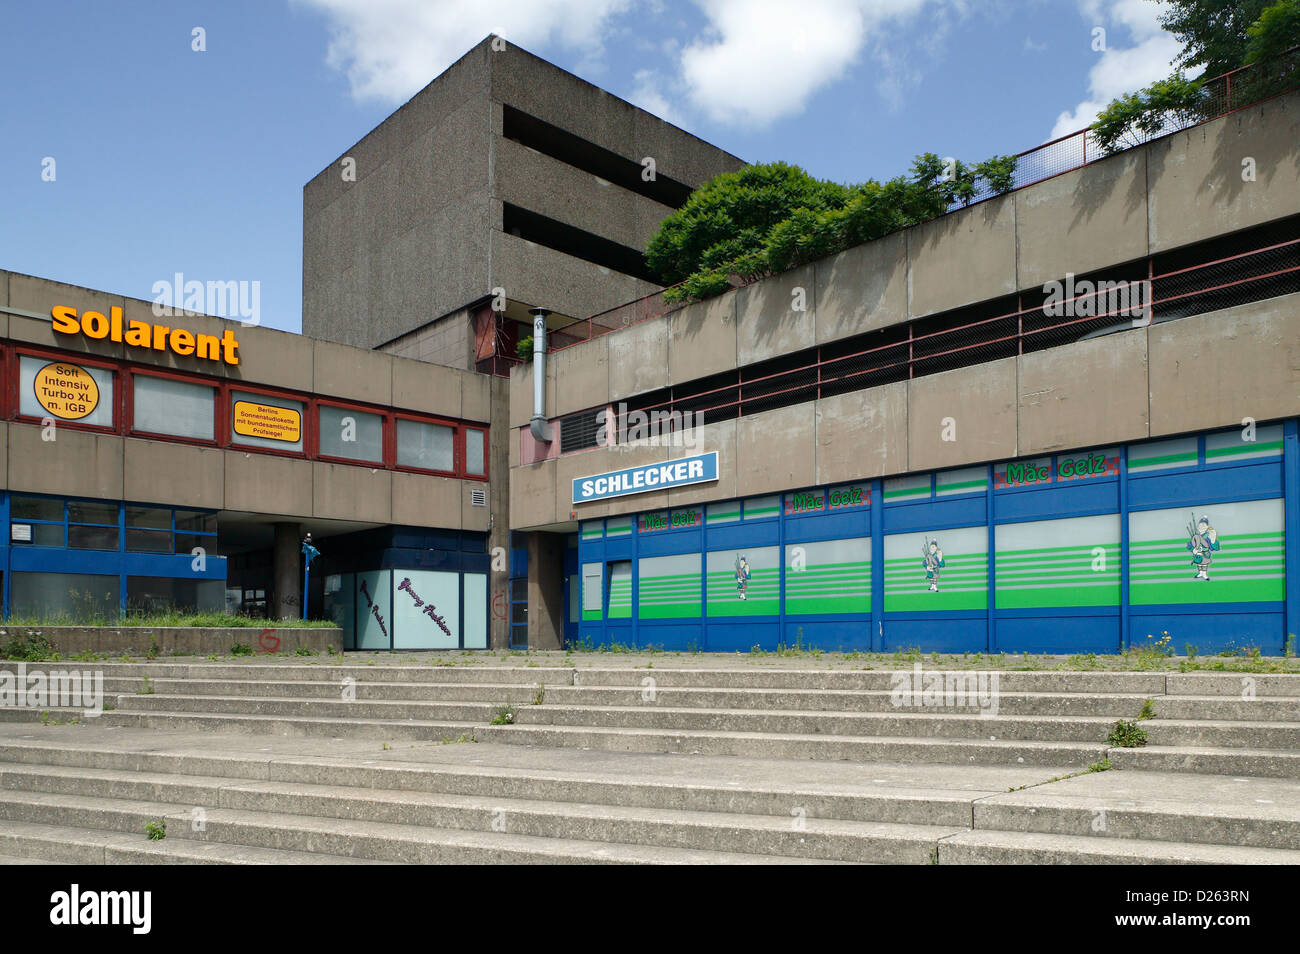 Berlin, Deutschland, Solarent, Schlecker und Maec Geiz in ein Wohnhaus integriert Stockfoto